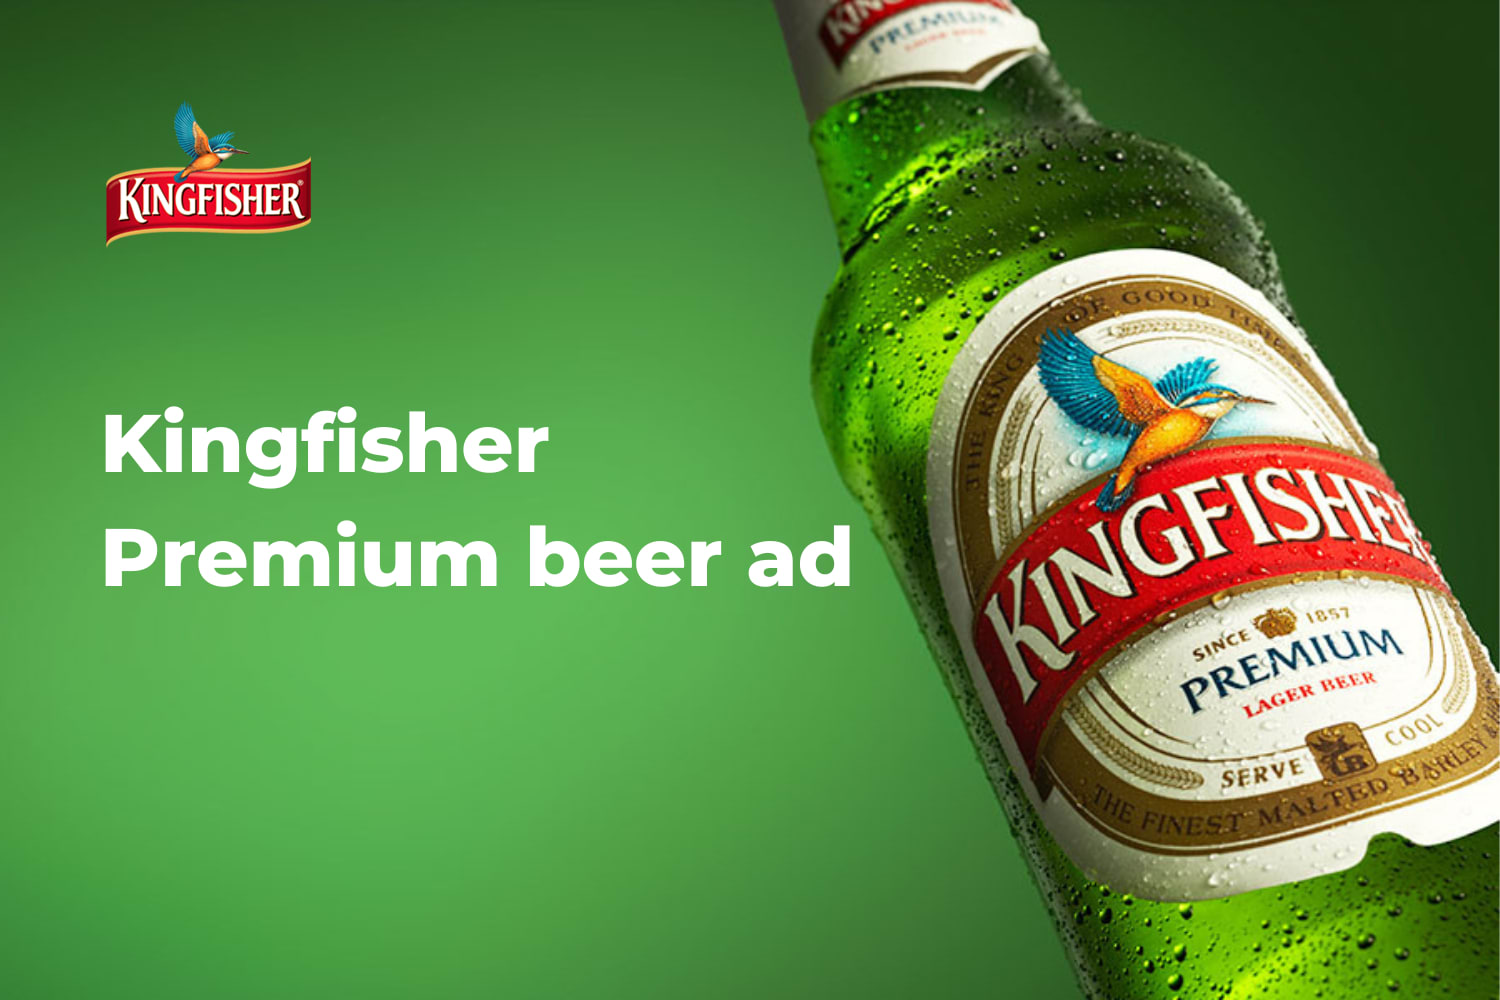 Kingfisher Premium beer ad - Fueler